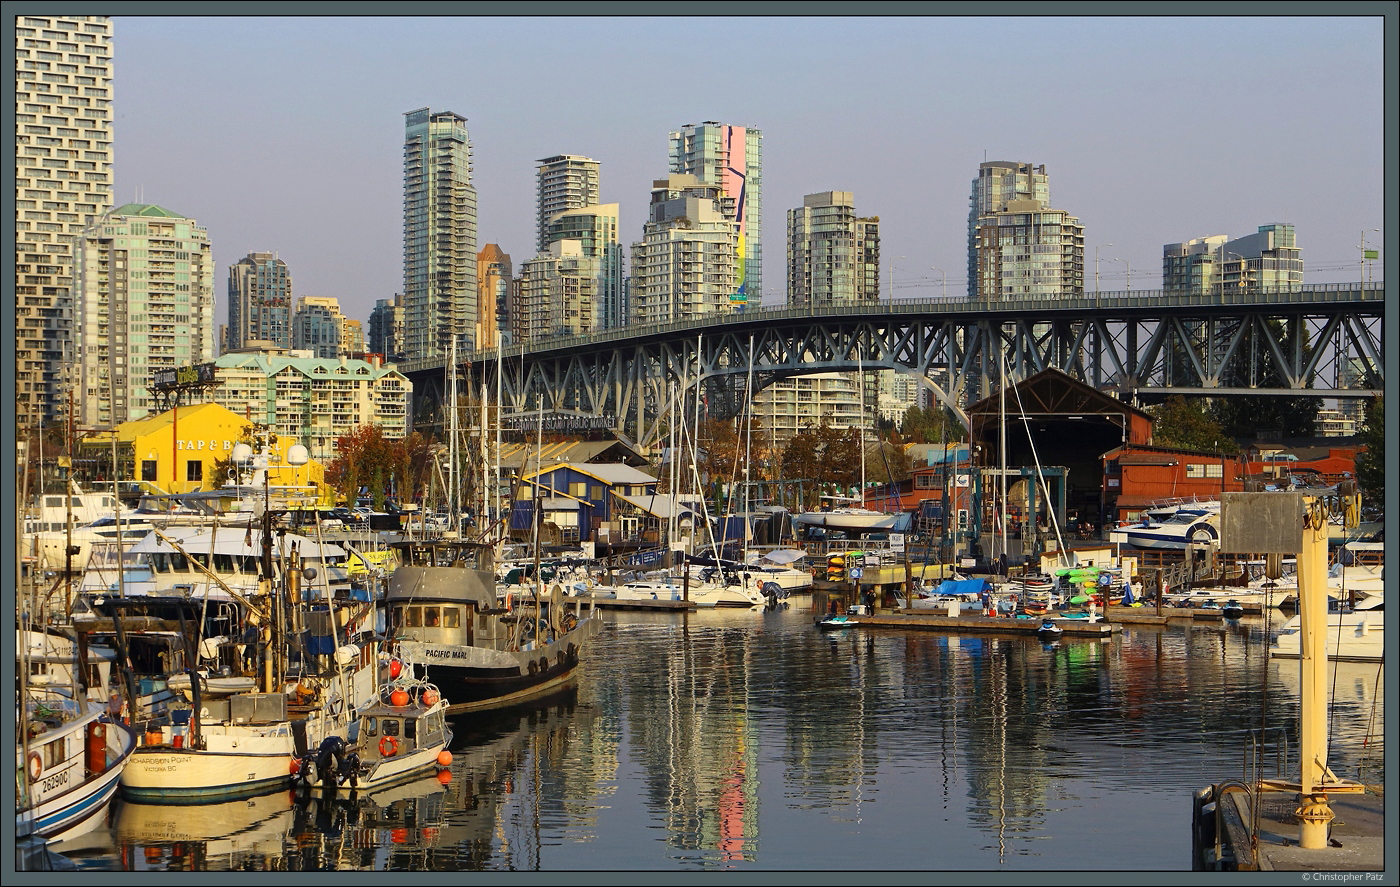 Die Granville Street Bridge wurde 1954 erffnet und verbindet die Stadtteile Downtown und Fairview in Vancouver. Sie berquert Granville Island, wo es neben Bootsbaubetrieben auch eine bei Touristen beliebte Markthalle sowie Theater und Kneipen gibt. Davor befindet sich der Hafen Fisherman's Wharf. (Vancouver, 16.10.2022)